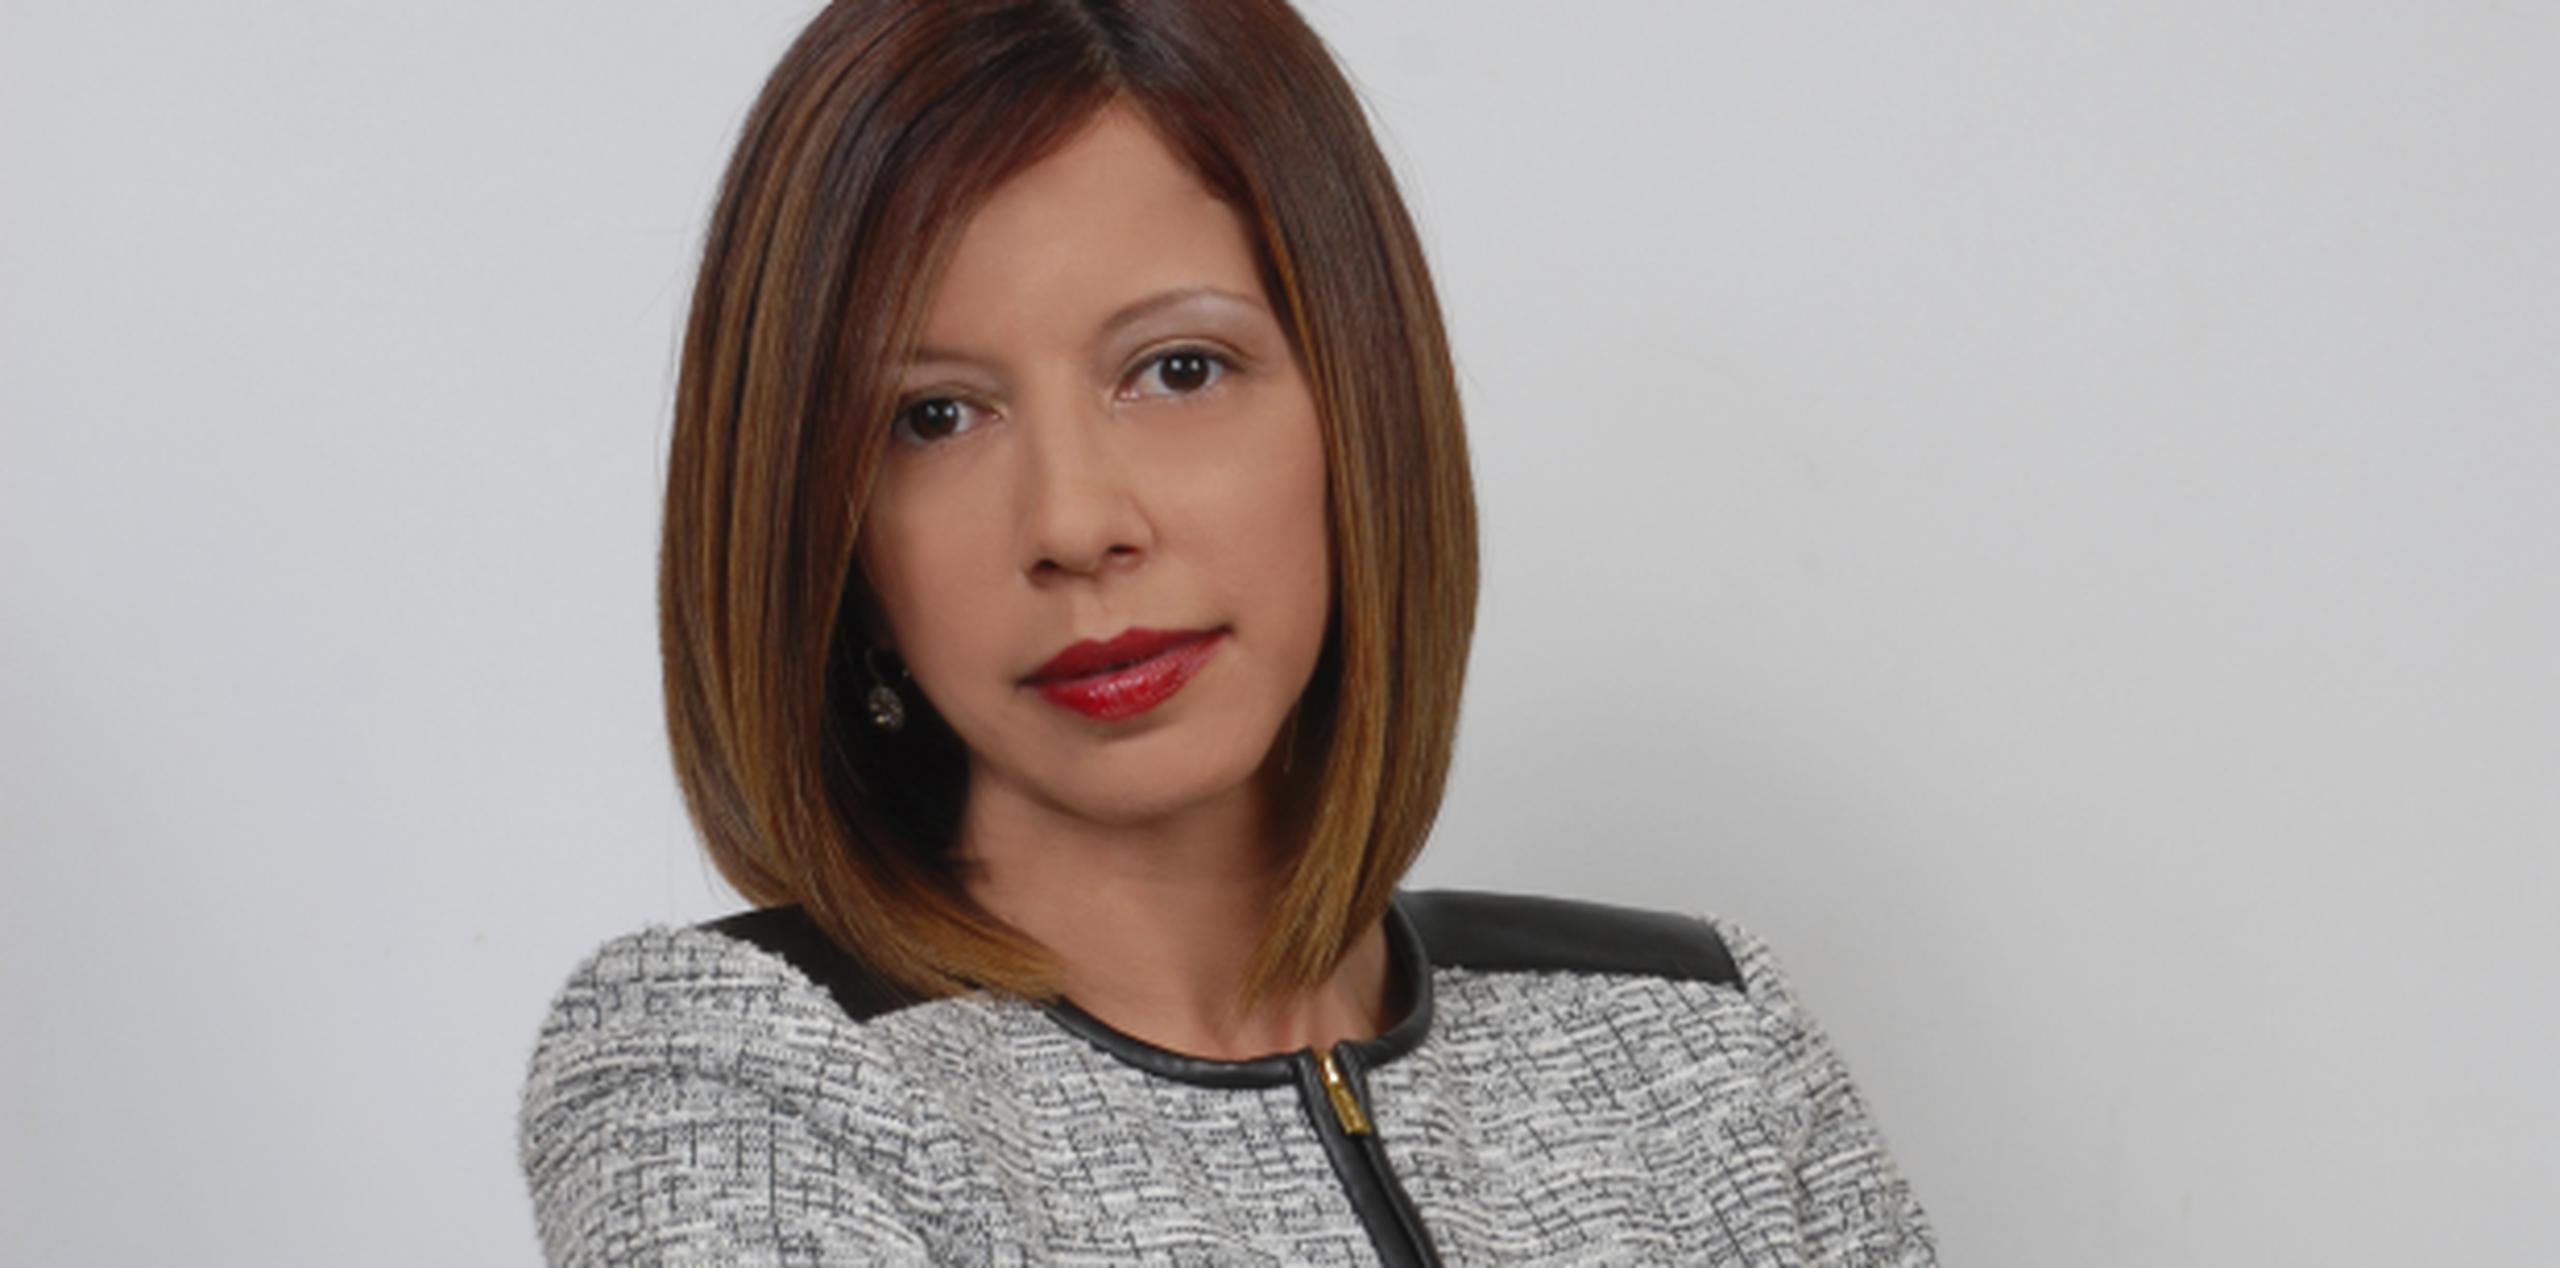 La licenciada Sheila M. Torres, es la presidenta de la corporación PR Child Adoption, dedicada a ofrecer servicios para facilitar los procesos de adopción y entregas voluntarias de menores. (Suministrada)